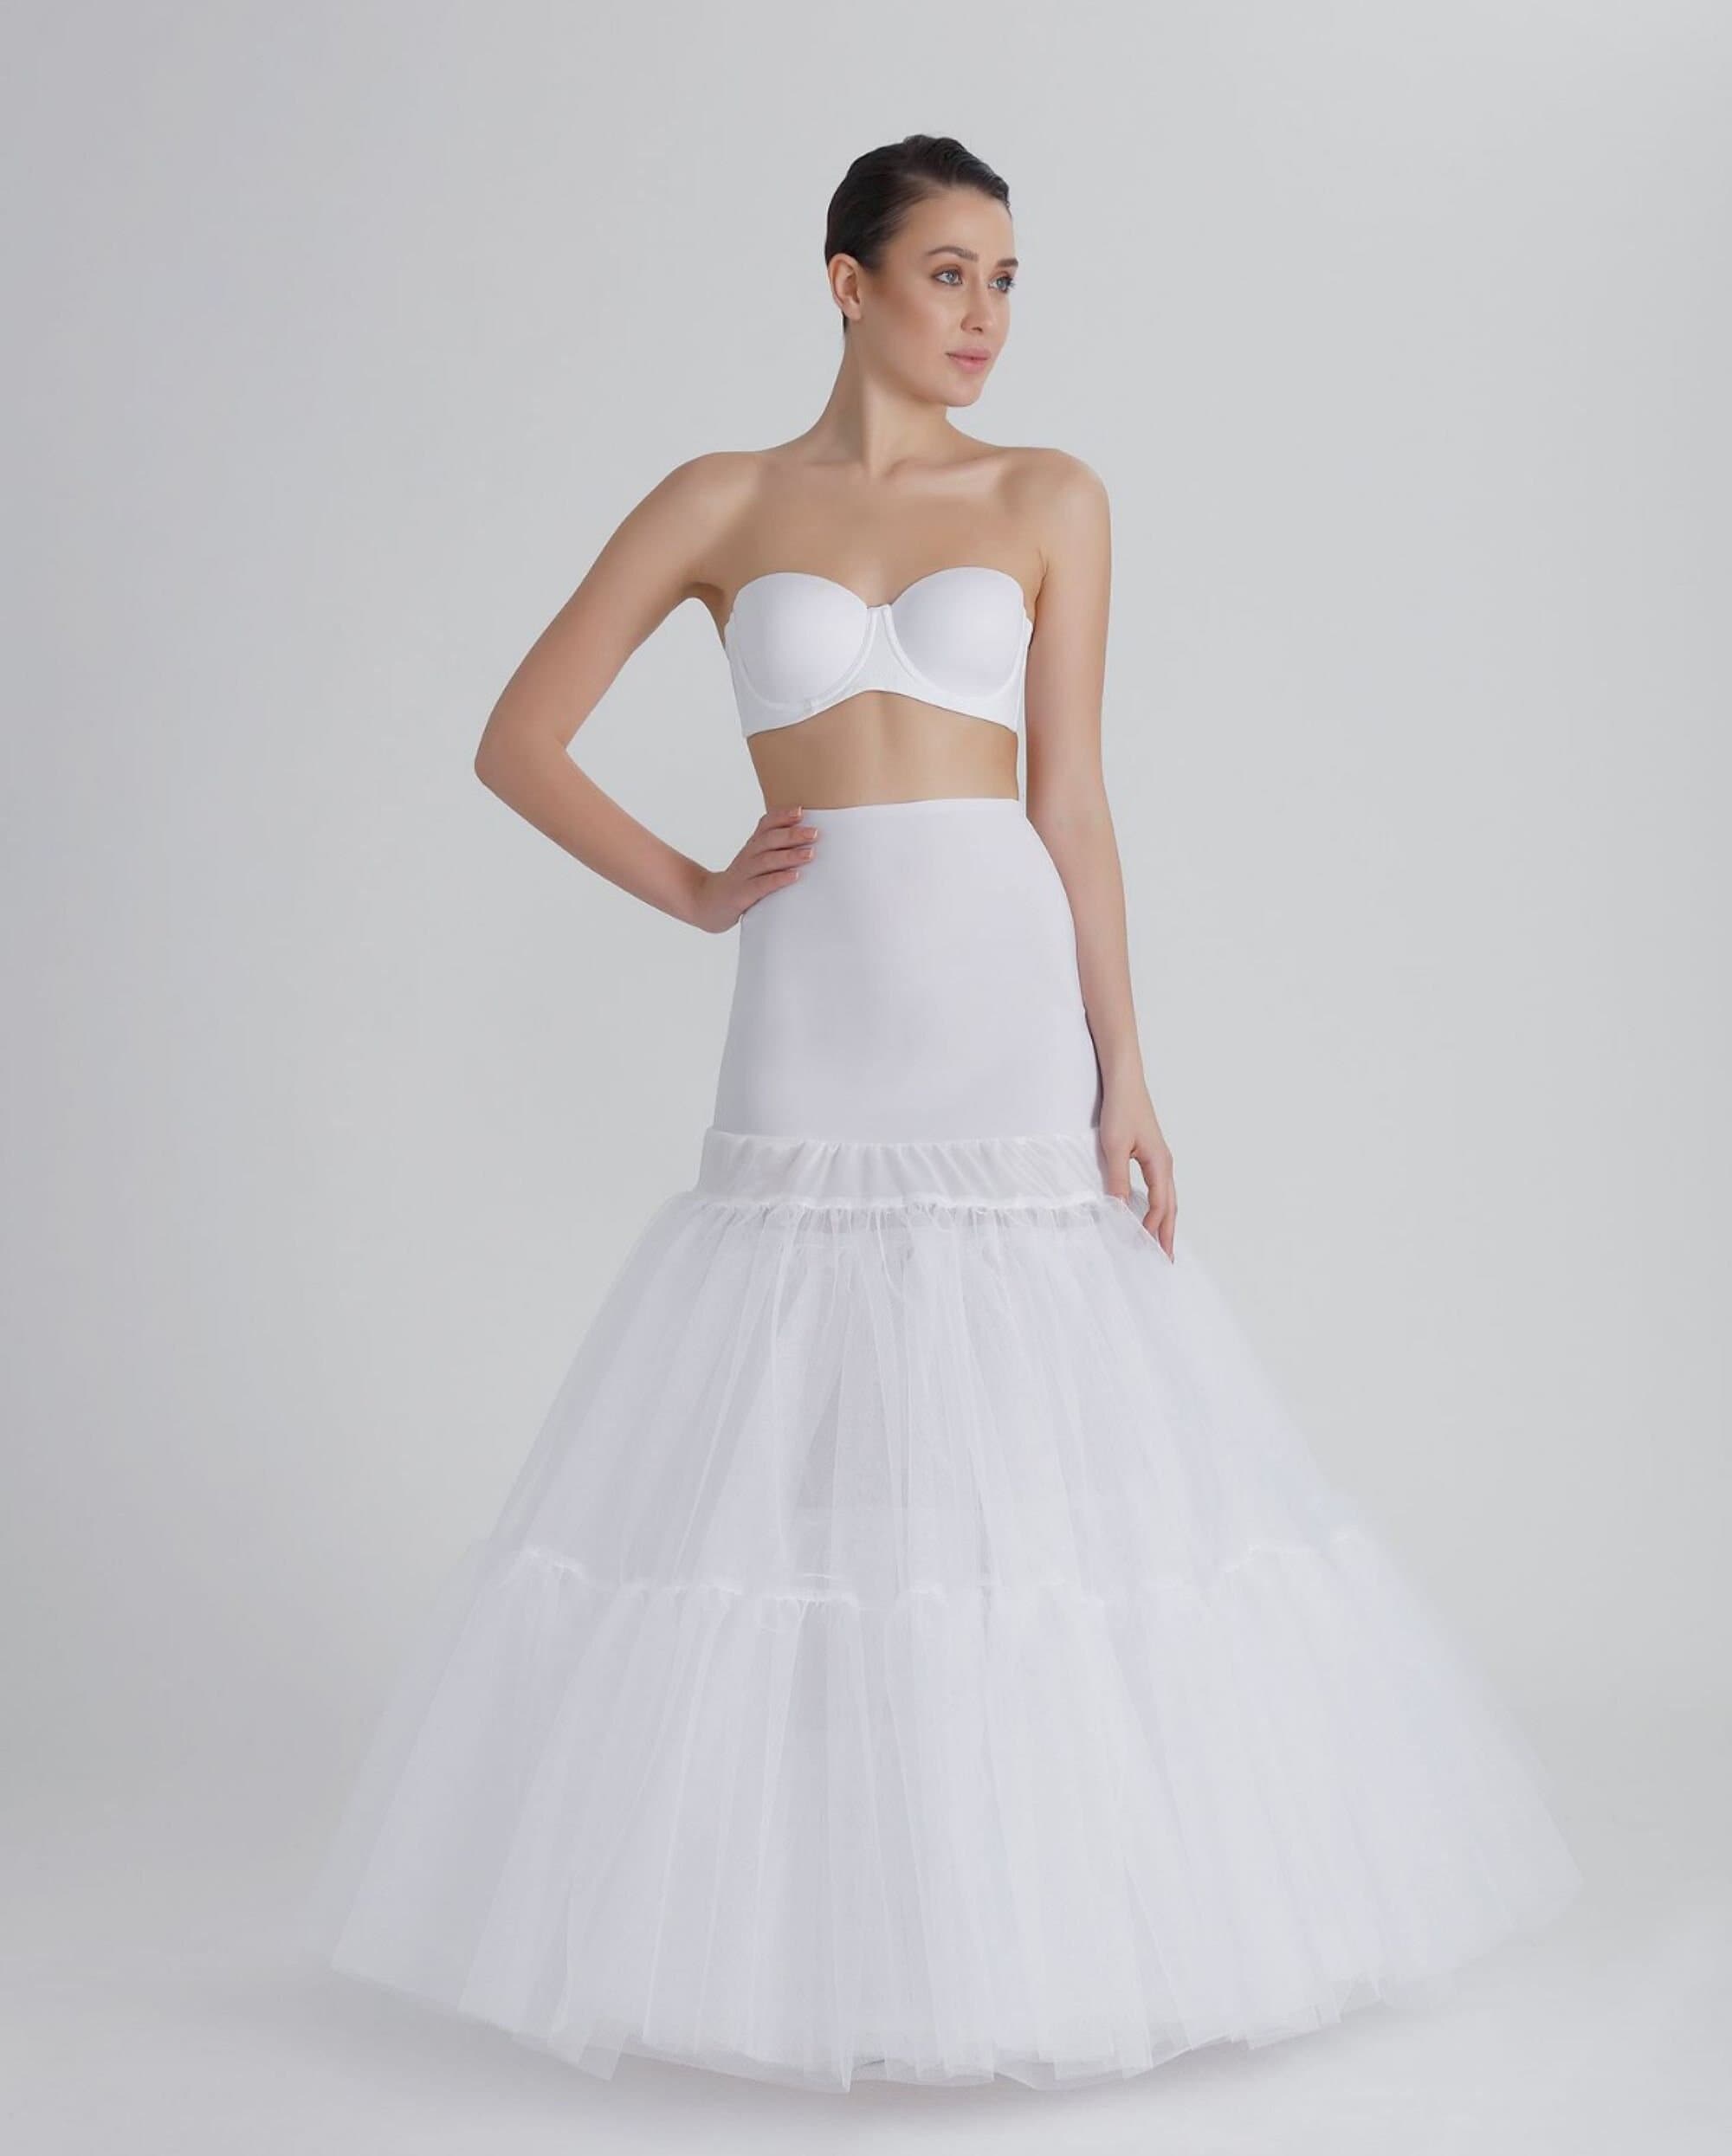 JenPen Wedding Gown Underskirt Drawstring Bride Buddy White Bridal Underskirt for Dresses Toilet Petticoat for Wedding Dress